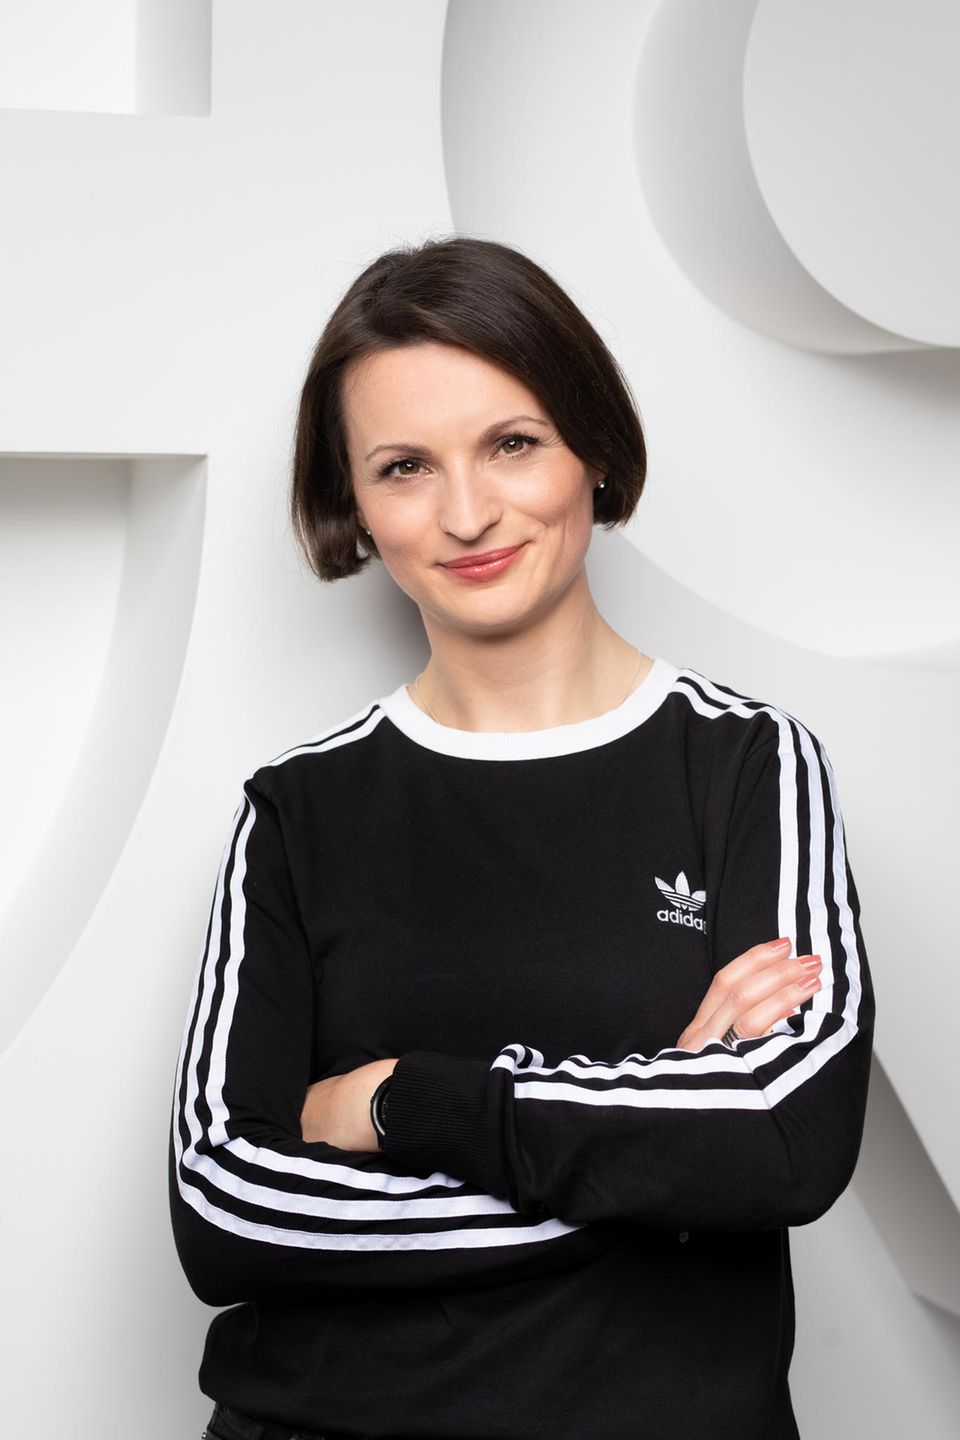 Marina Moguš, 39, ist seit 15 Jahren bei Adidas. Sie hat mehrere Positionen im Finanzbereich des Sportartikelherstellers ebenso wie bei der langjährigen Tochtermarke Reebok in Deutschland und den USA durchlaufen. Zuletzt war sie Geschäftsführerin in Osteuropa, von dort wurde sie im Juli dieses Jahres zur Geschäftsführerin für Zentraleuropa berufen. Sie ist eine der ersten Adidas-Mitarbeiterinnen, die an dem Mentorenprogramm von Adidas-Chef Kasper Rorsted teilgenommen hat. Moguš gehört 2021 auch zu den Preisträgern der „Top 40 unter 40“, die das Wirtschaftsmagazin Capital jedes Jahr kürt.